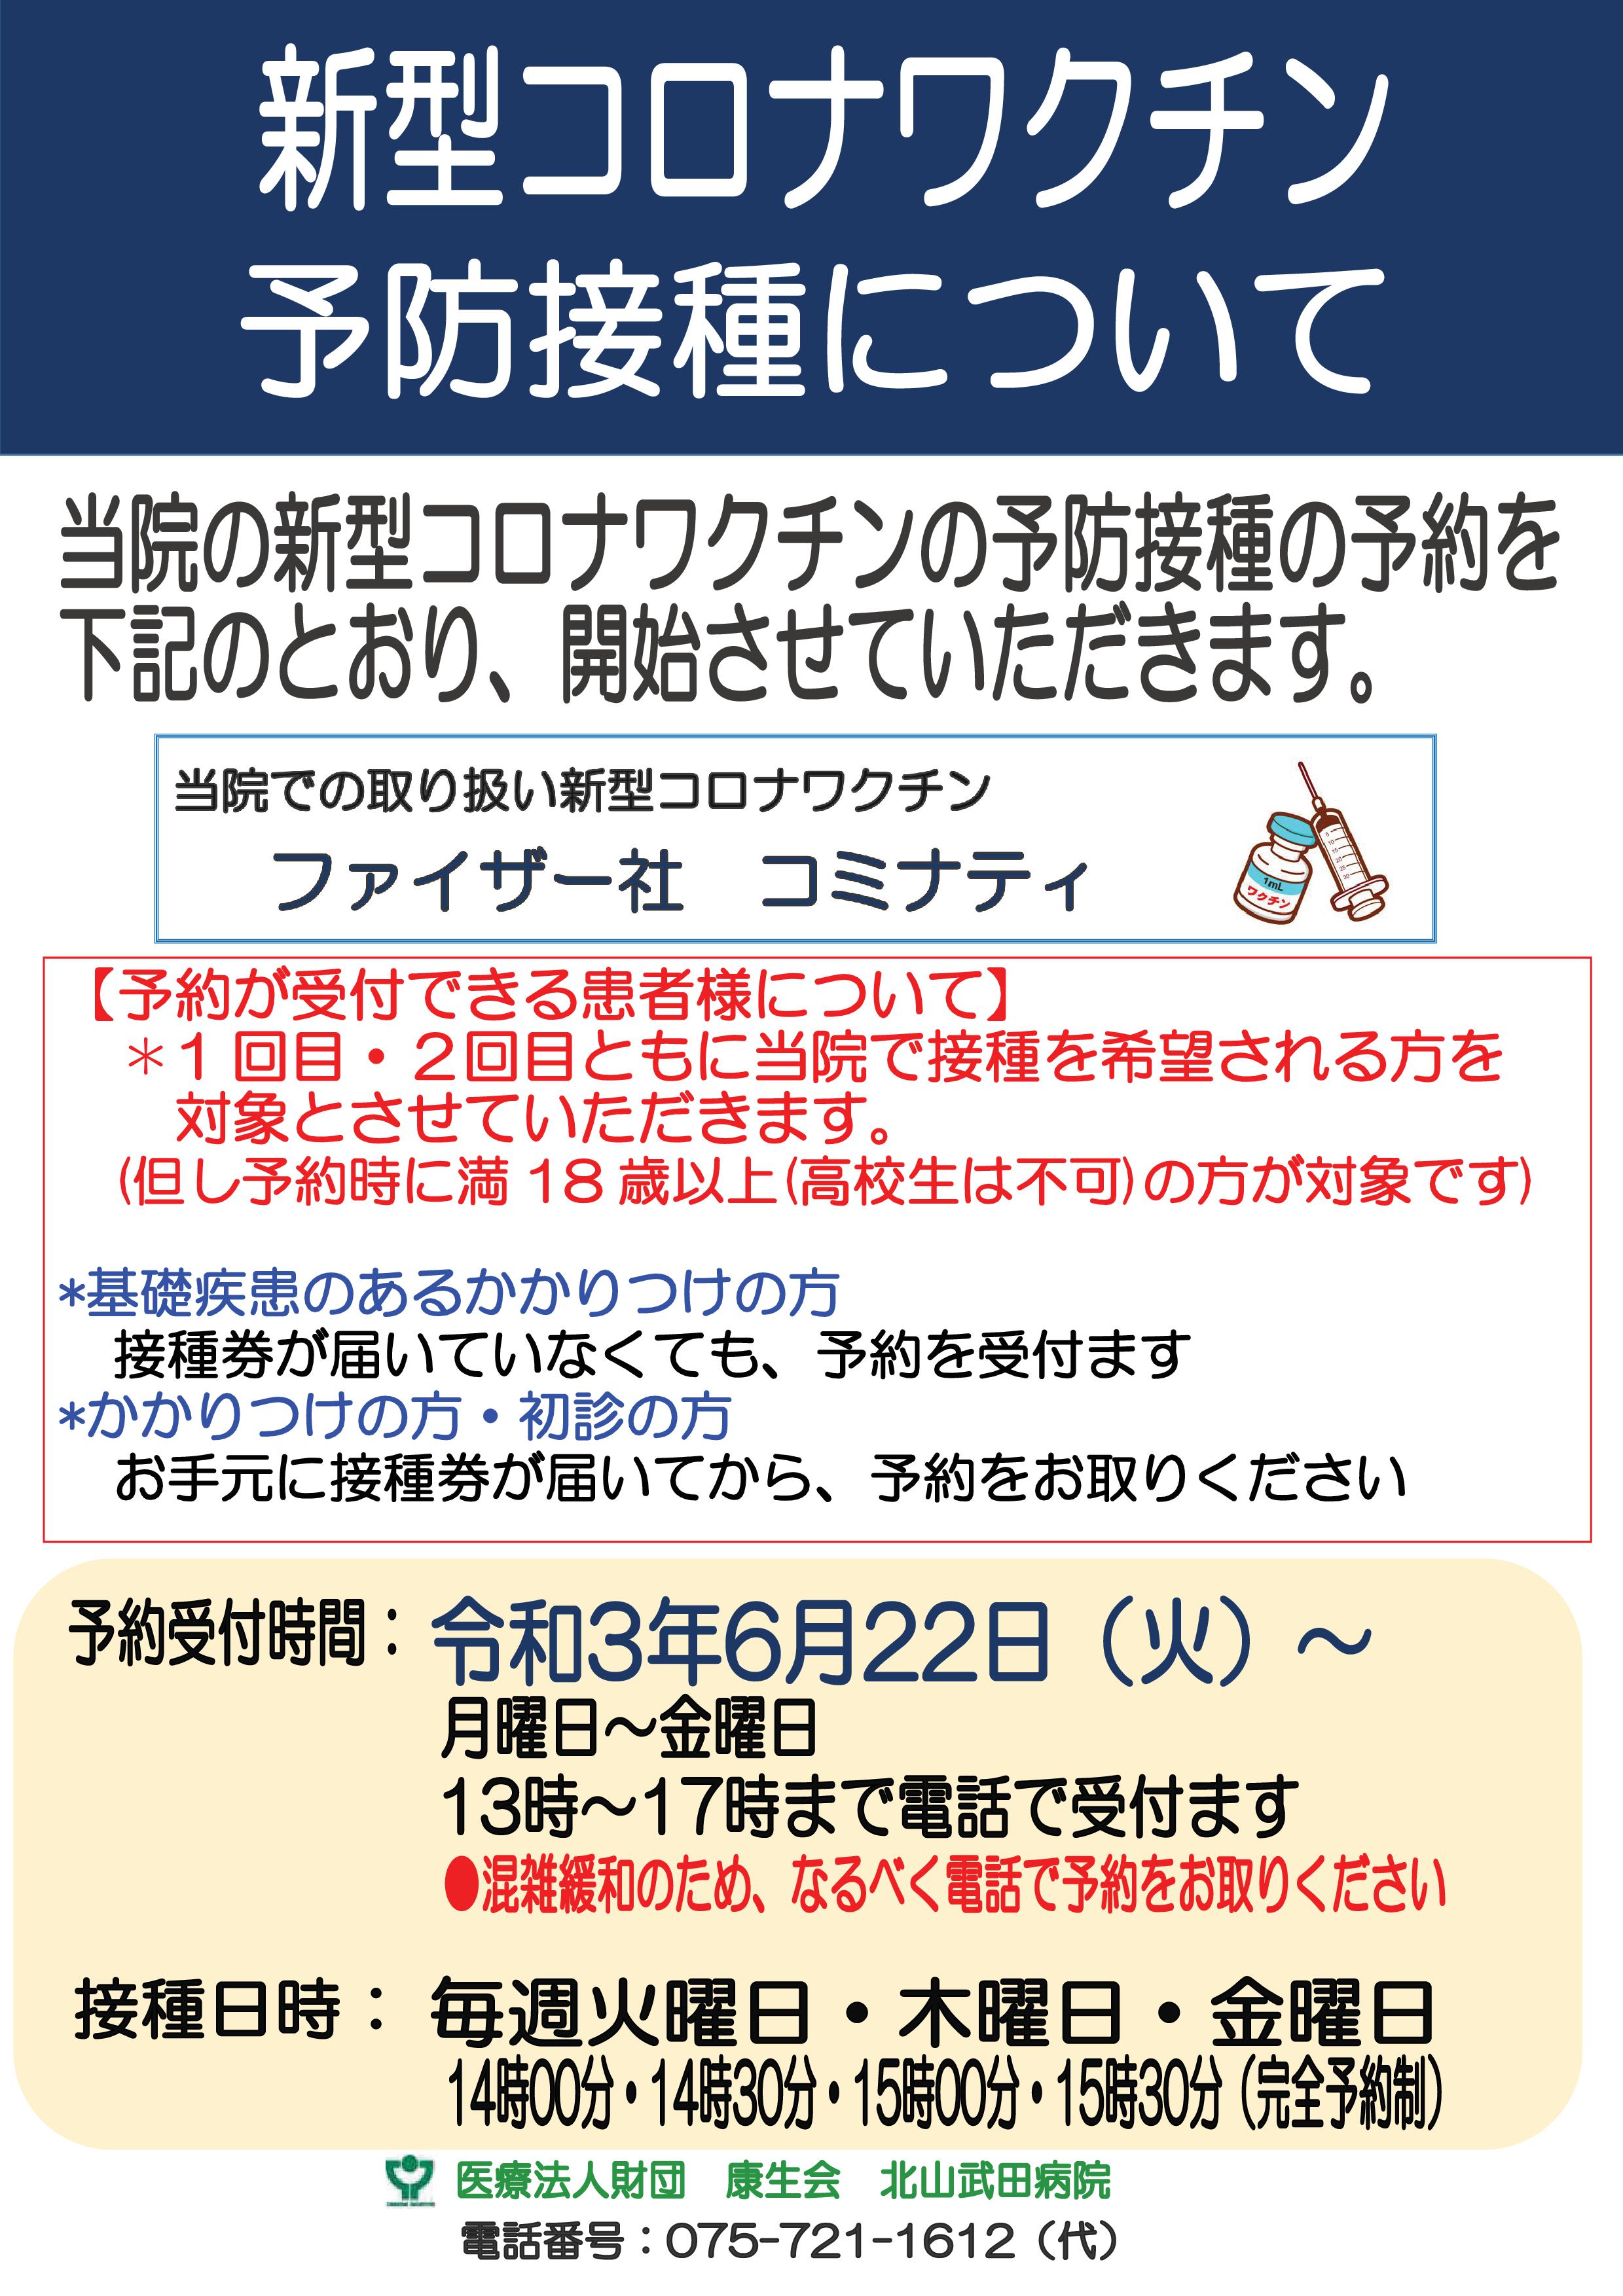 新型コロナワクチン予防接種について 新着情報 武田病院グループ